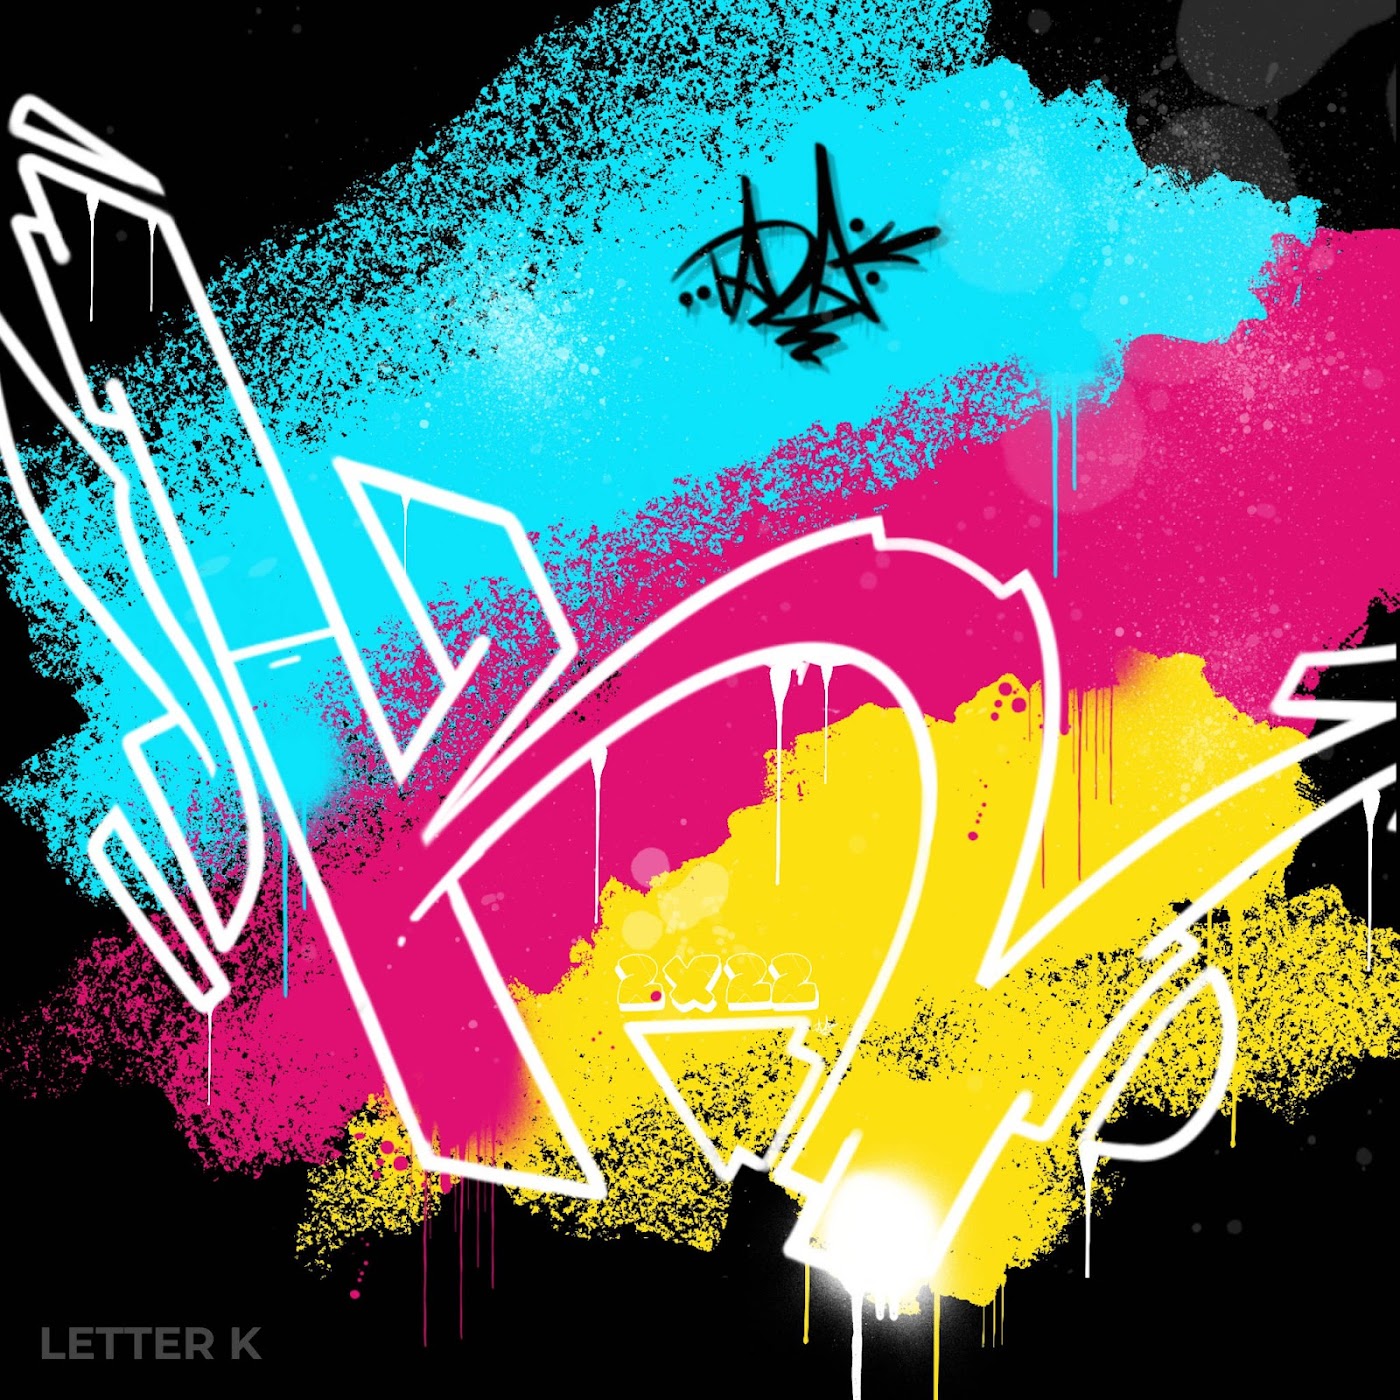 Graffiti Letter K - Graffiti Empire Collection | OpenSea